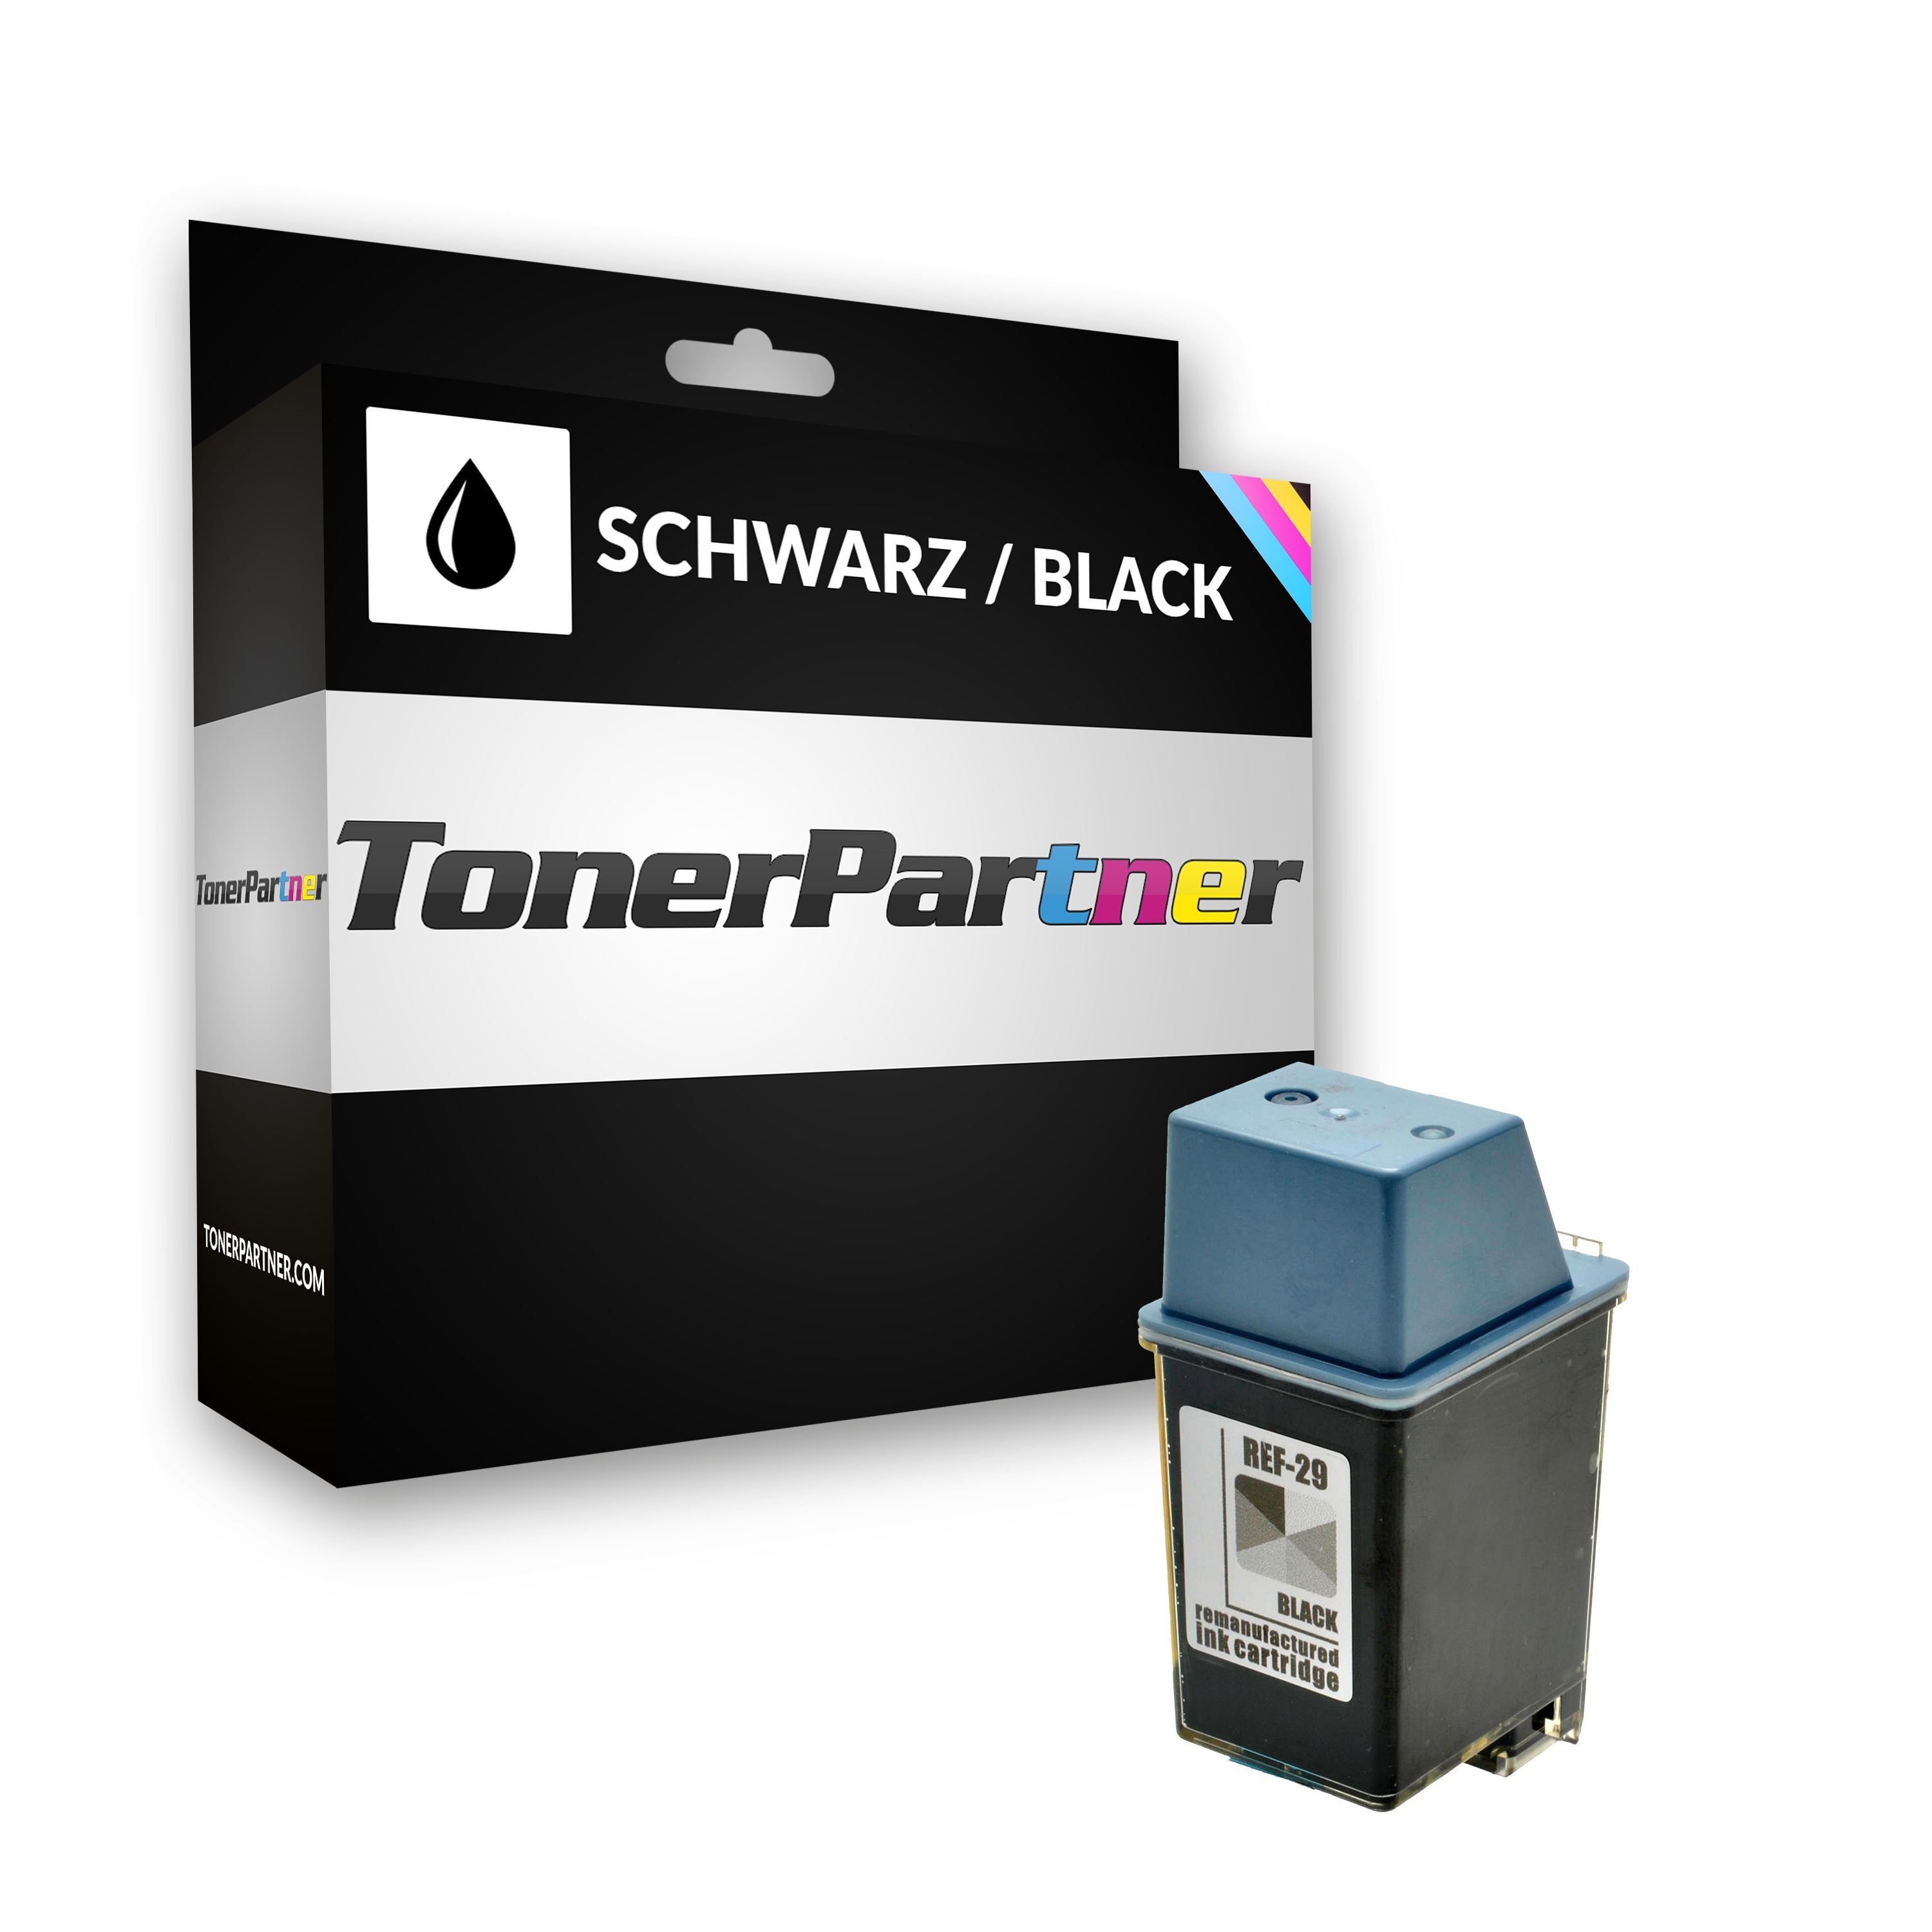 TonerPartner Kompatibel zu HP OfficeJet 570 Tintenpatrone (29 / 51629 AE) schwarz, 650 Seiten, 3,03 Rp pro Seite, Inhalt: 40 ml von TonerPartner